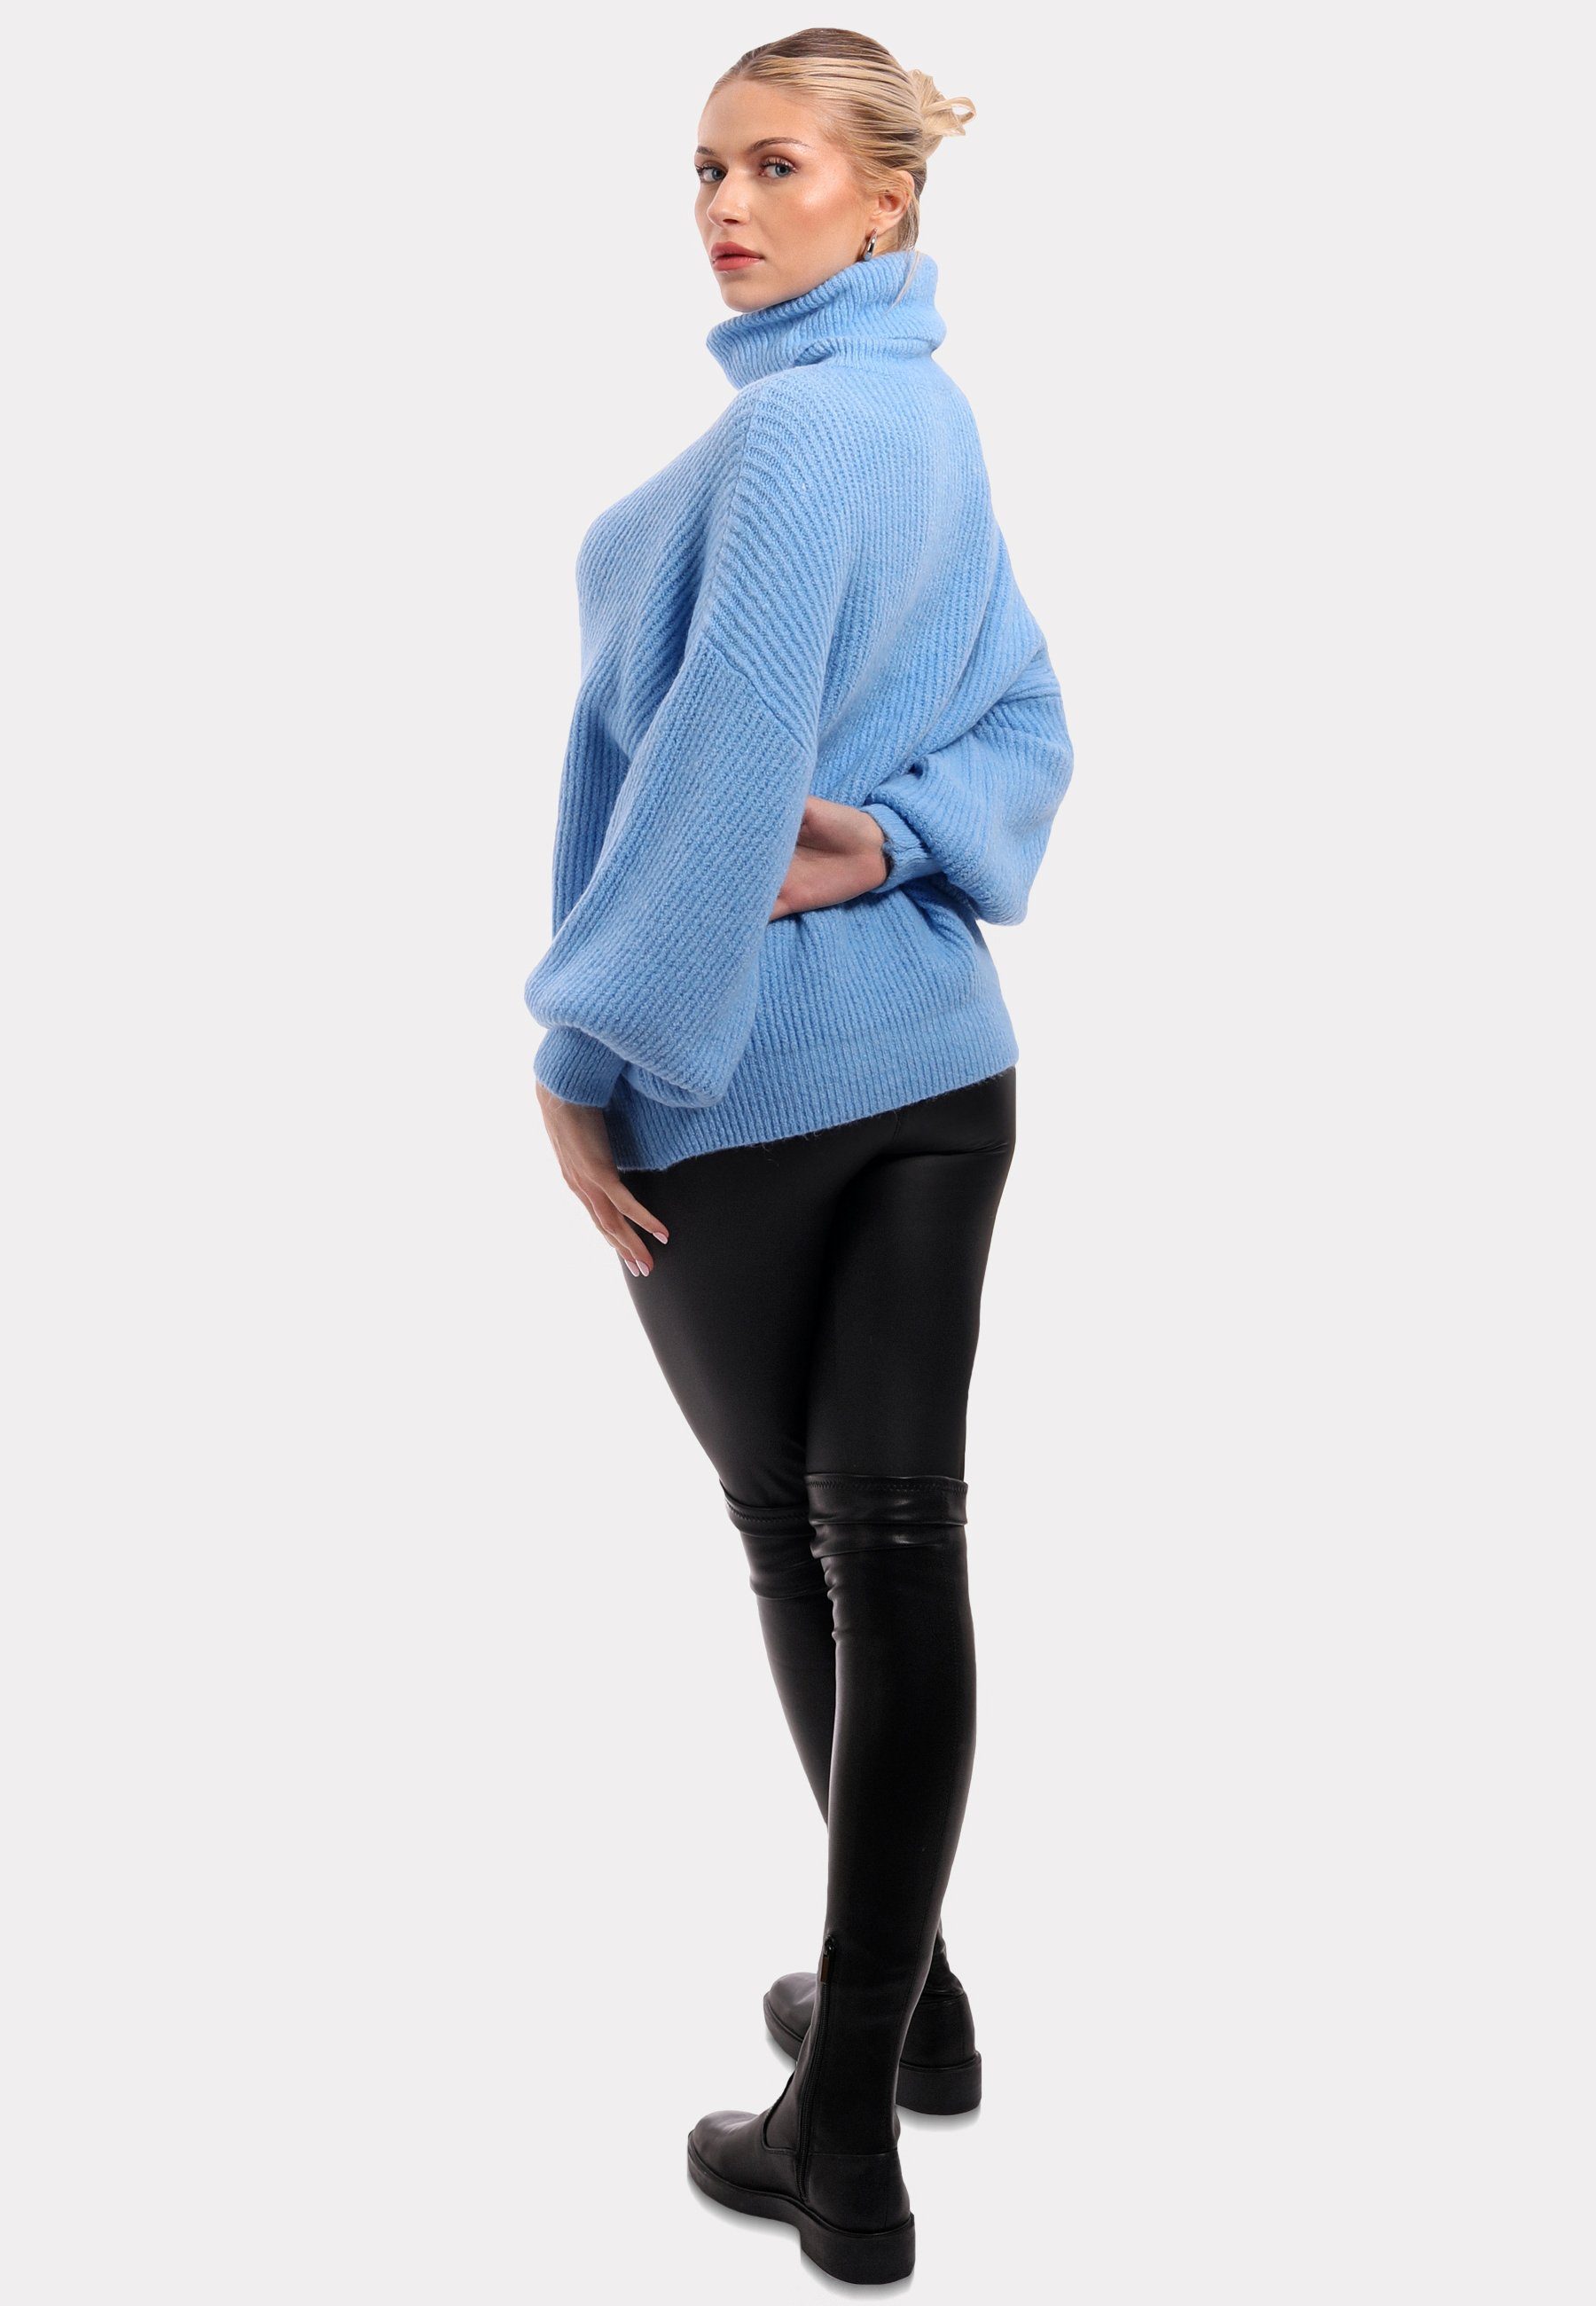 Blau in mit Rollkragen Fashion Rollkragenpullover YC Unifarbe Pullover Sweater & Winter Casual Style